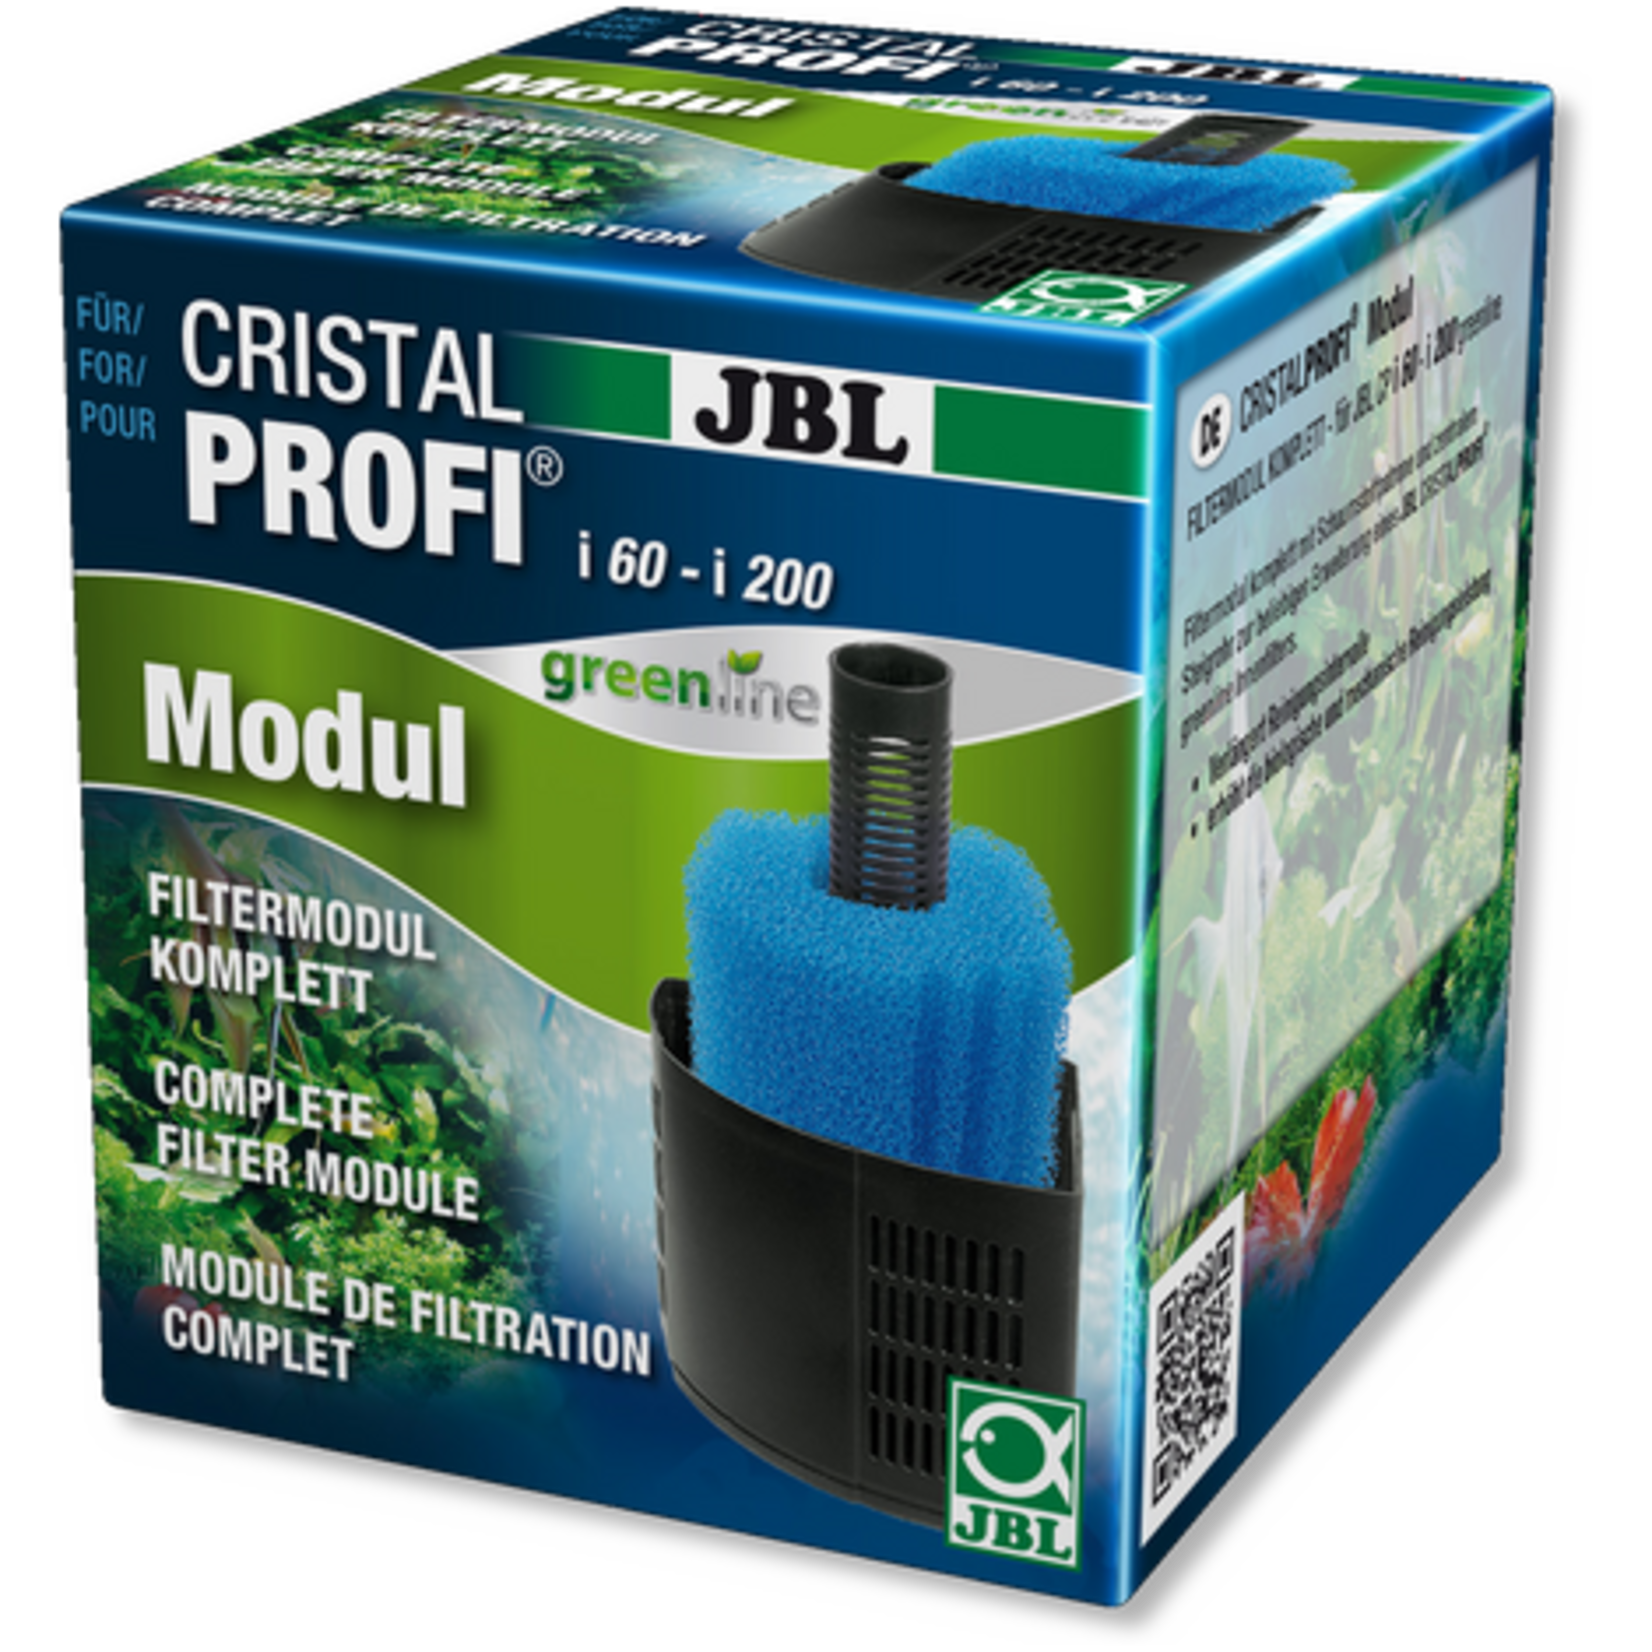 JBL JBL CRISTALPROFI i greenline Modul